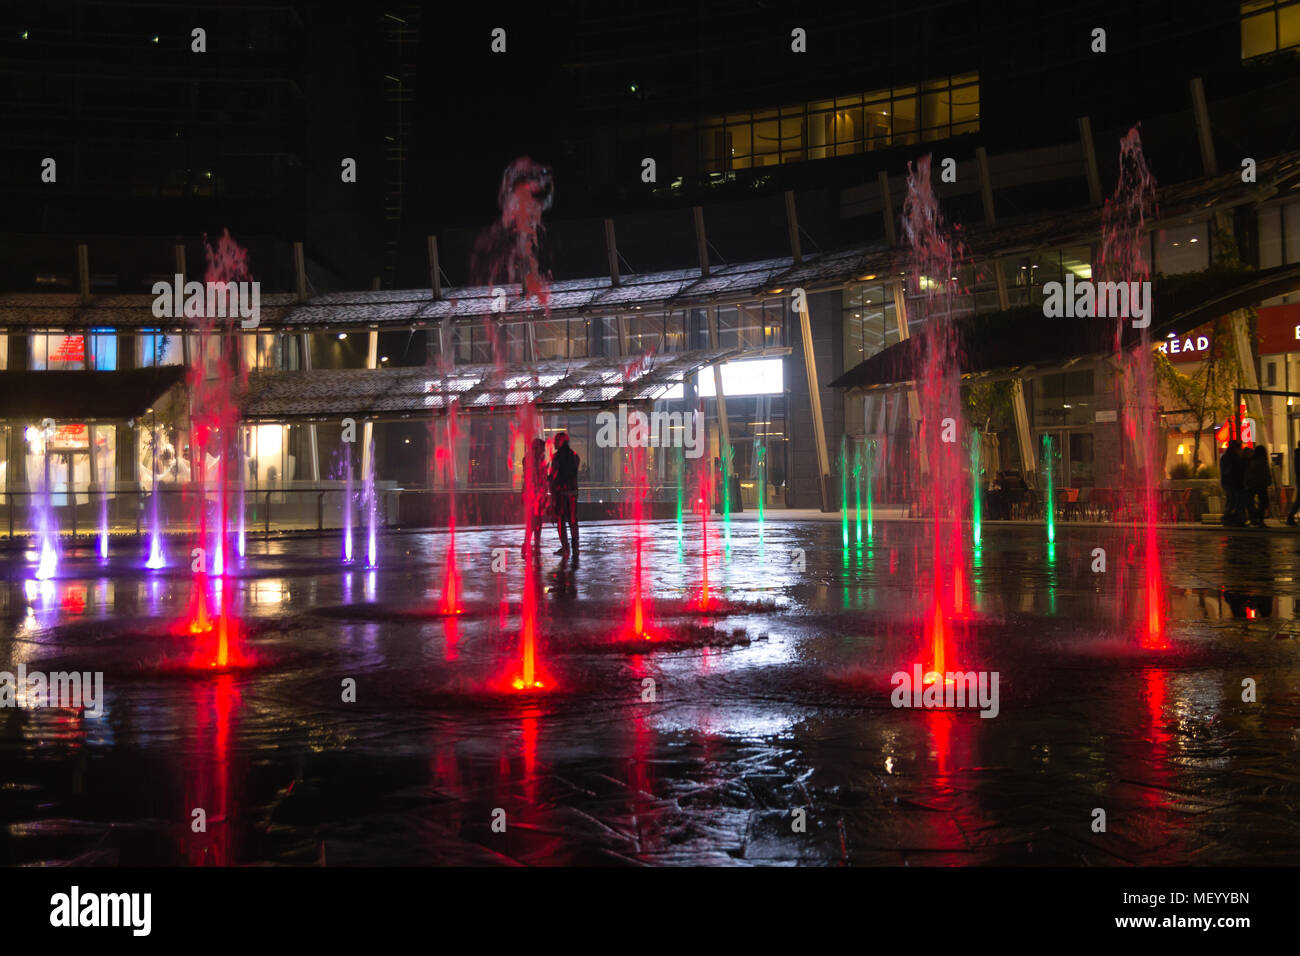 MILAN, ITALIE - 30 octobre 2016 : financial district Vue de nuit. L'eau des fontaines illuminées. Les gratte-ciel modernes dans Gae Aulenti square. La banque Unicredit à Banque D'Images